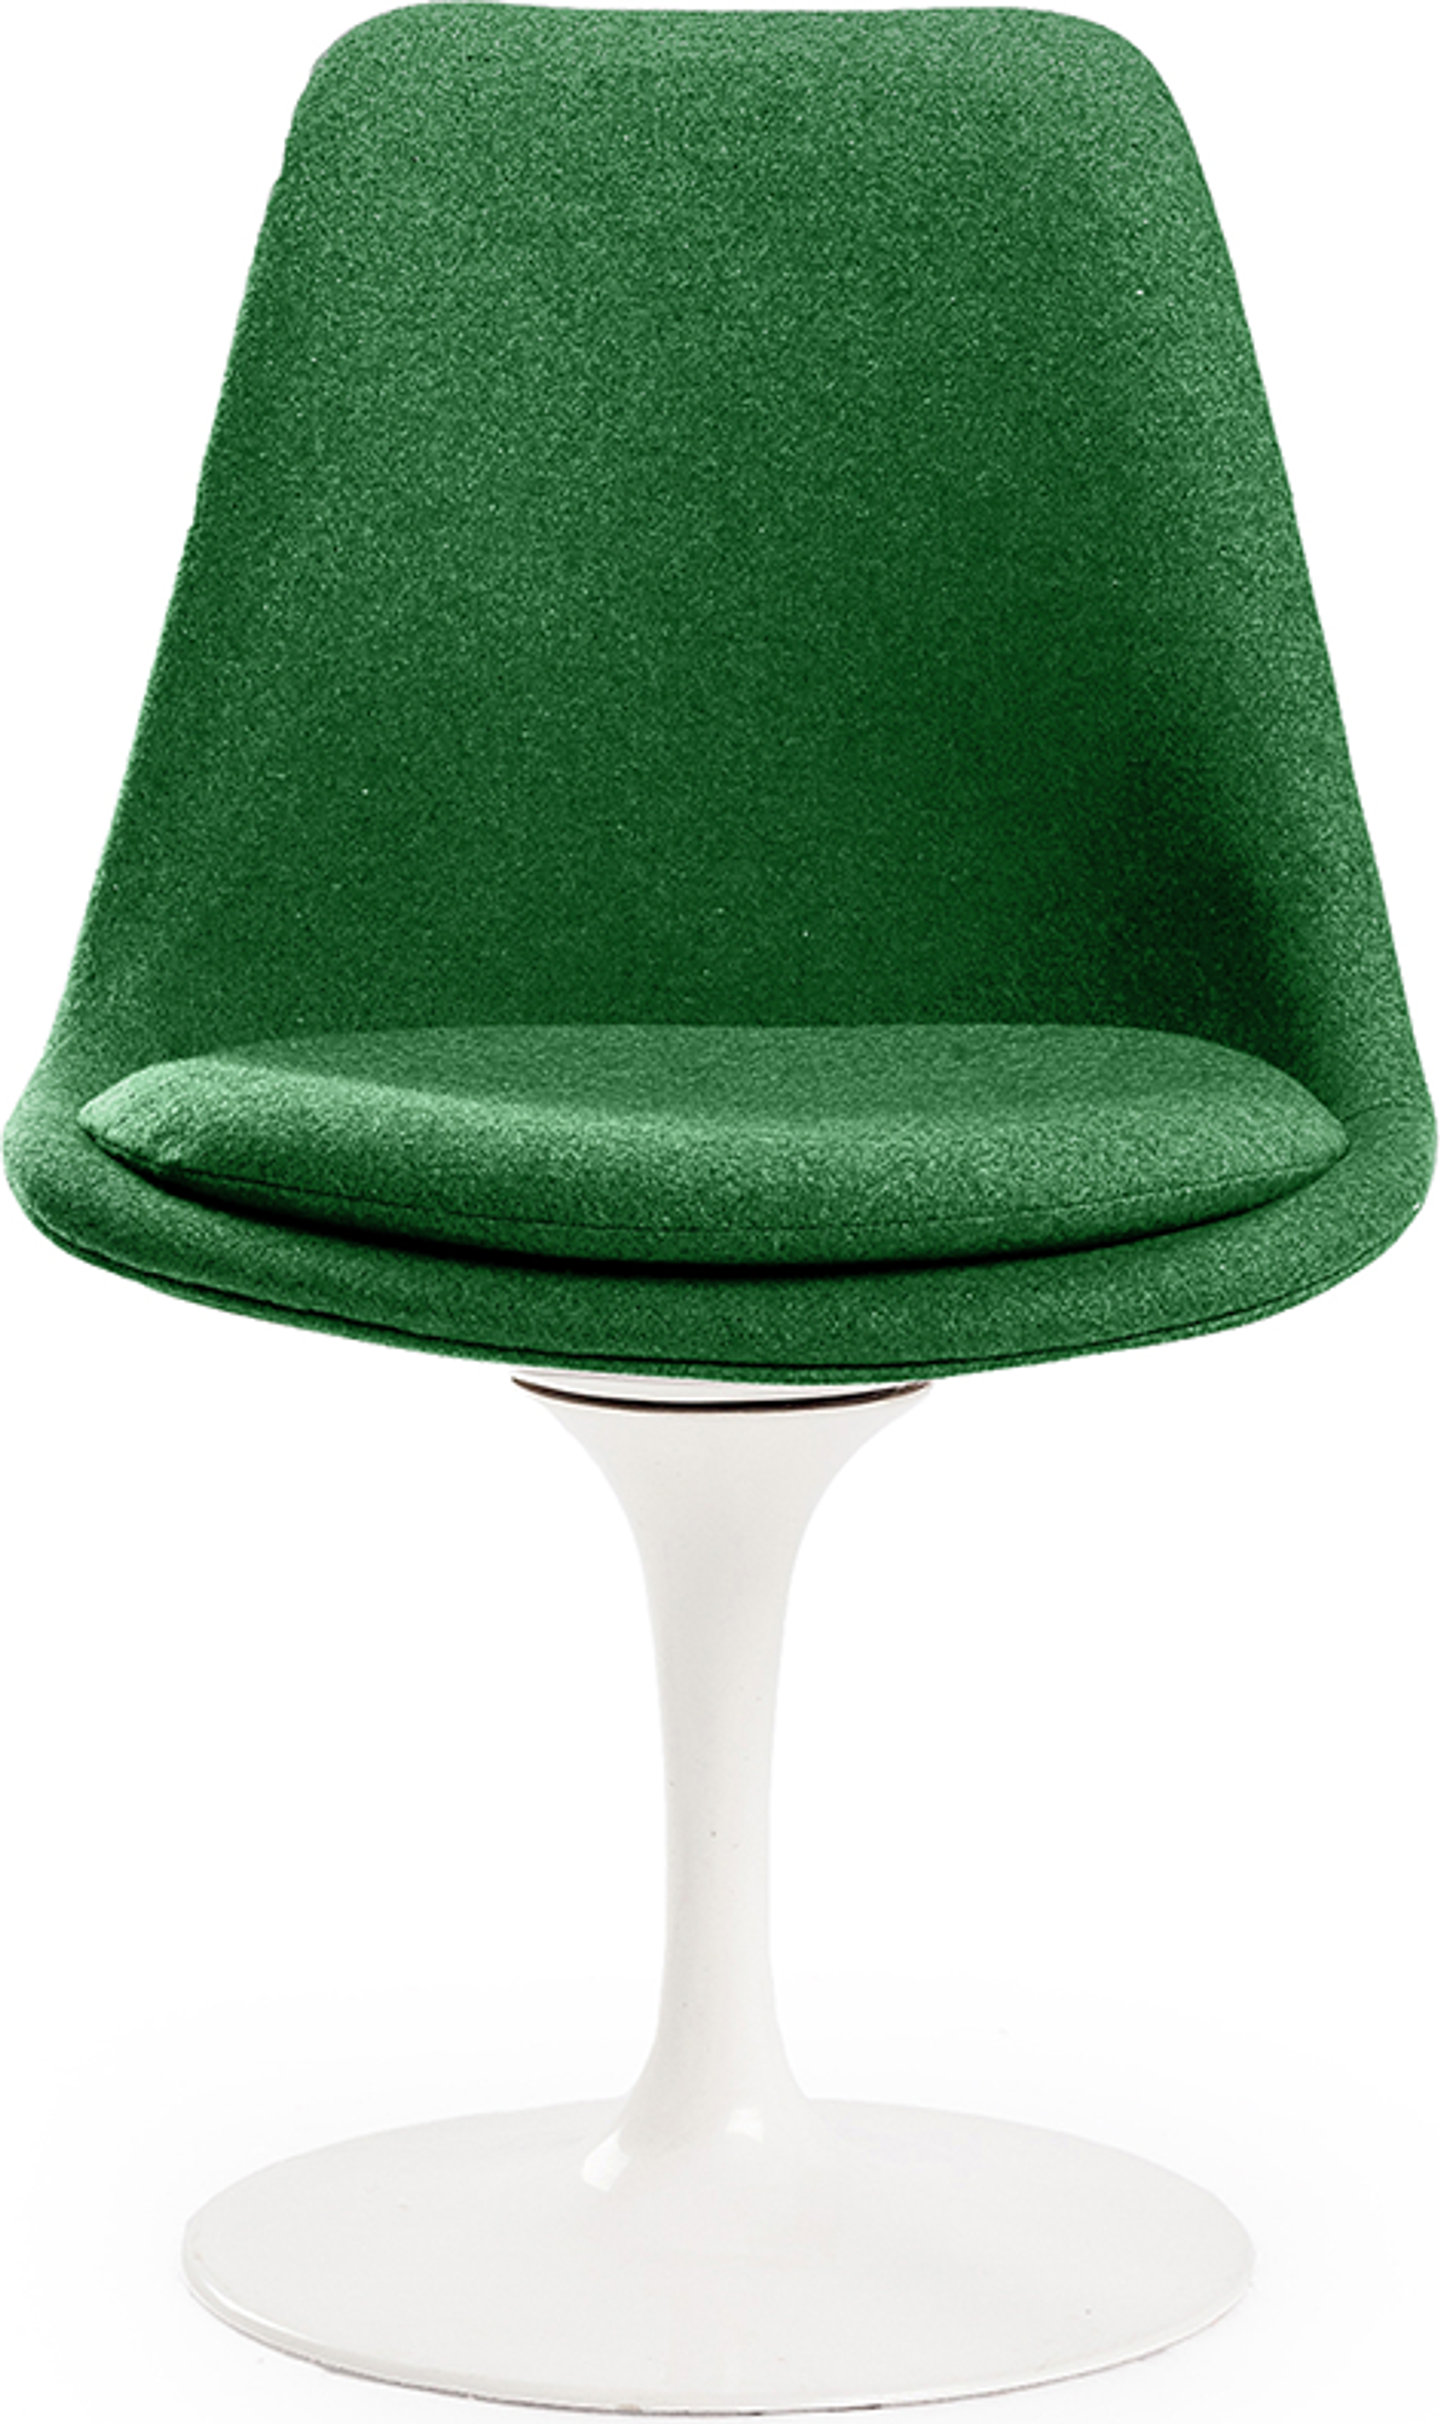 Tulip stol klädd Green image.